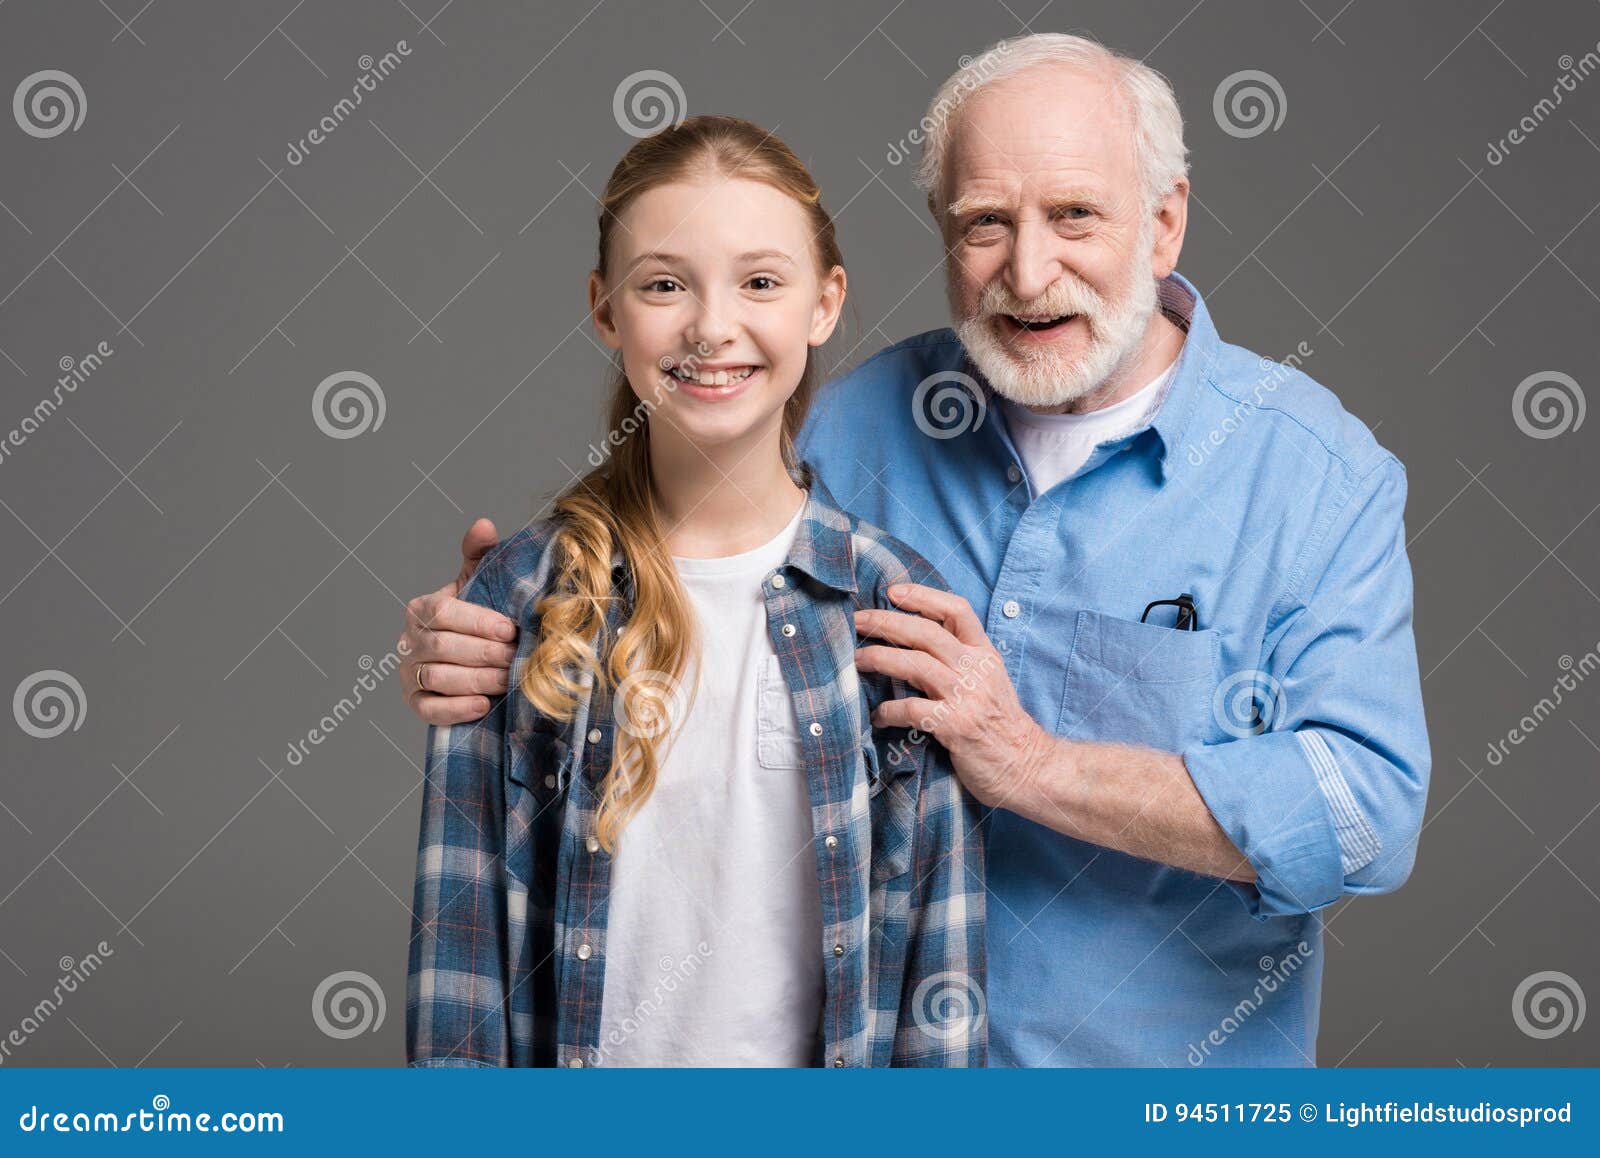 Старики внучку видео. Дедушка и внучка. Дедушка и внучка подросток. Дед обнимает внучку. Дедушка и взрослая внучка.